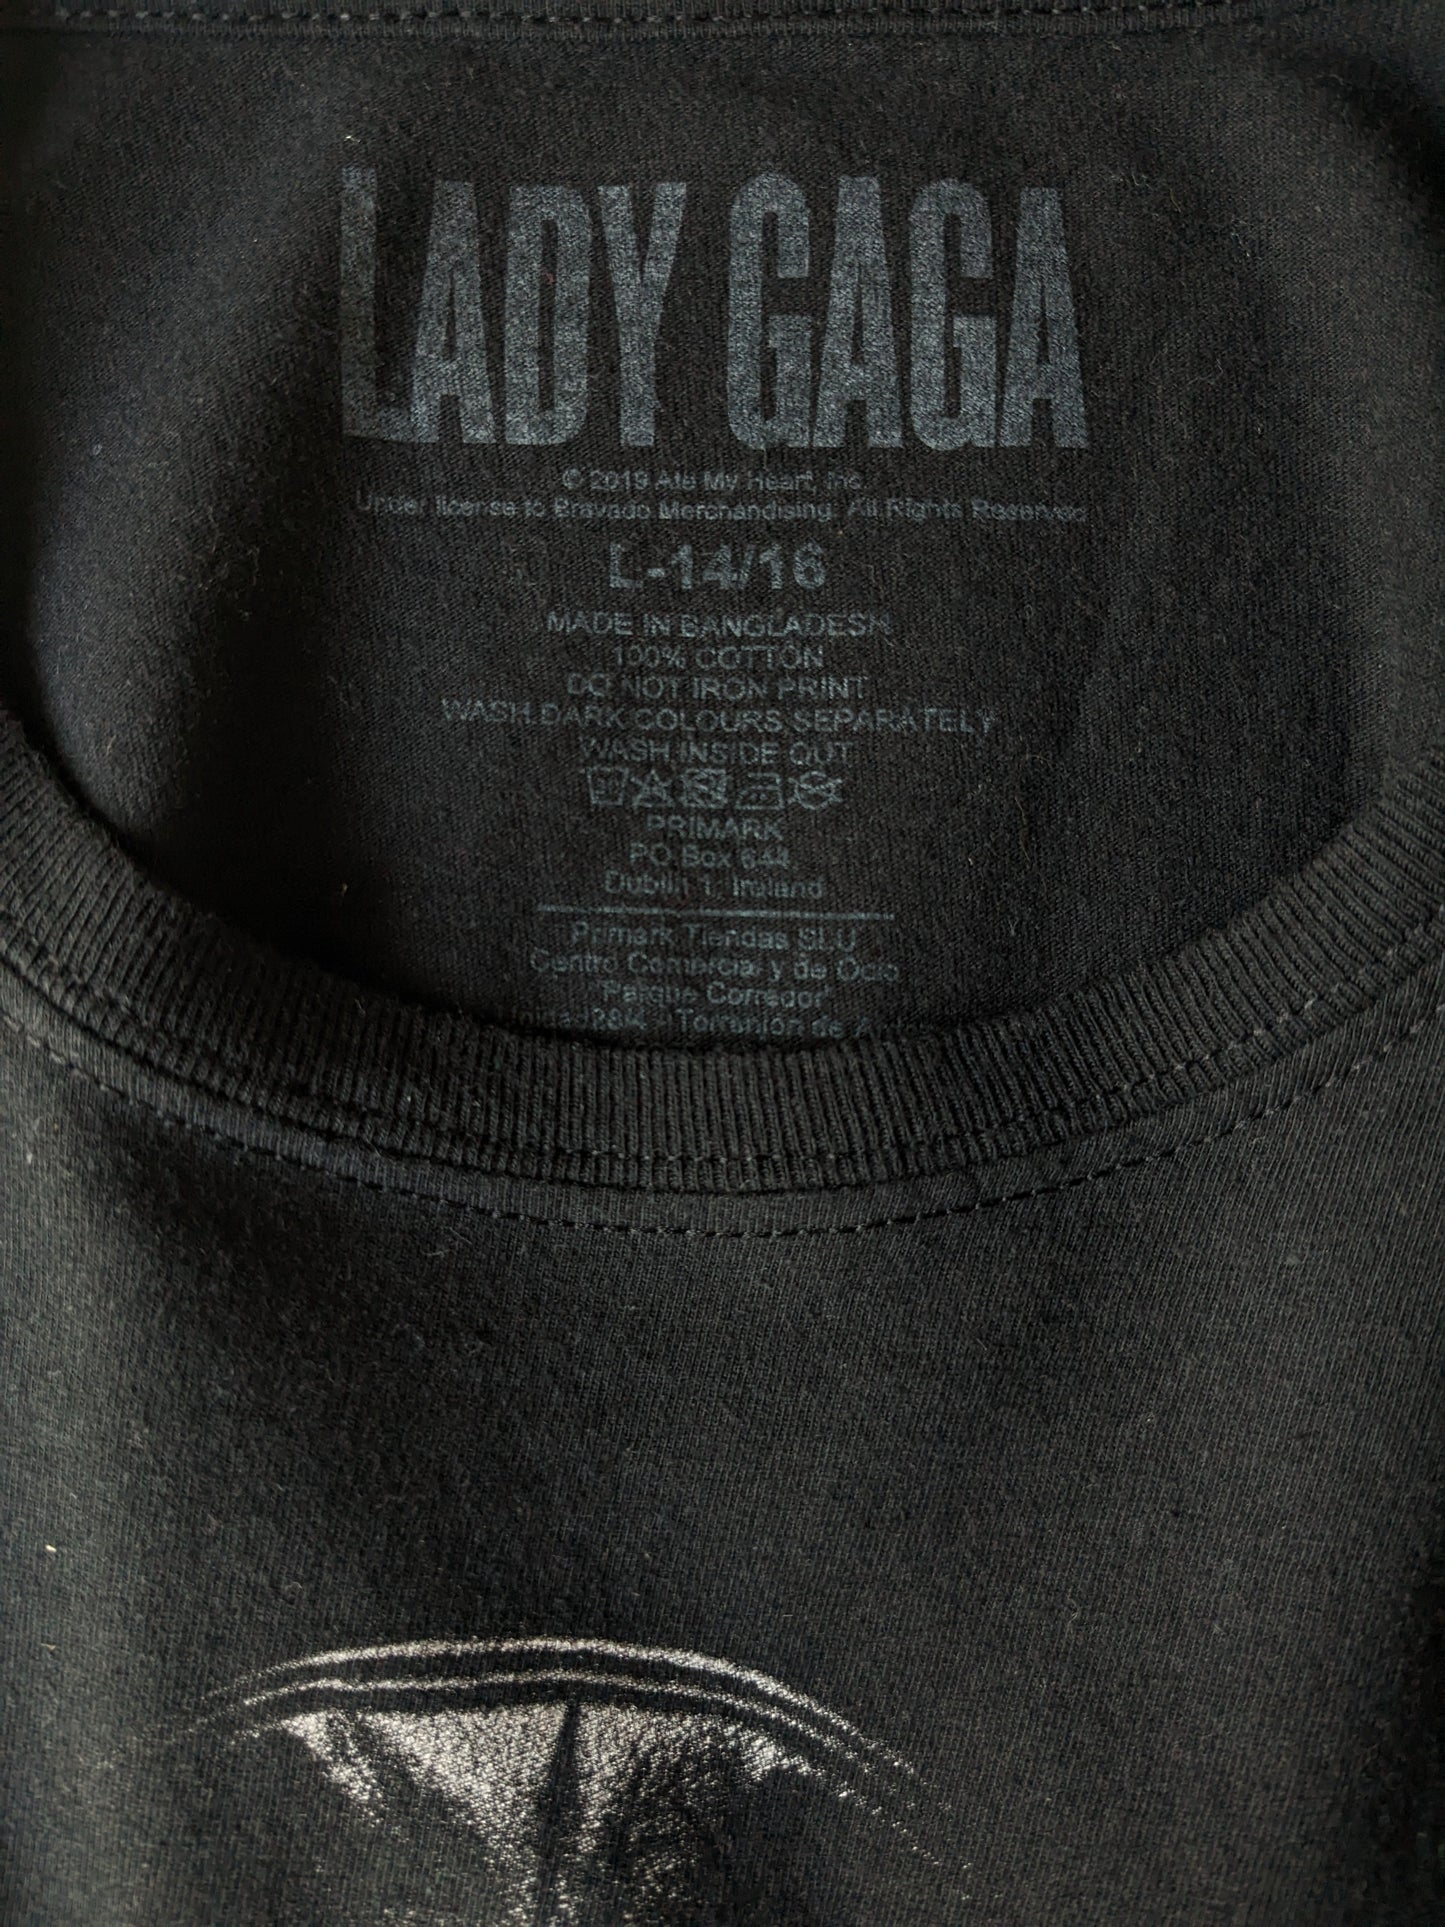 Lady Gaga -Hemd. Schwarz mit Druck. Größe L Kinder / s Erwachsenen.